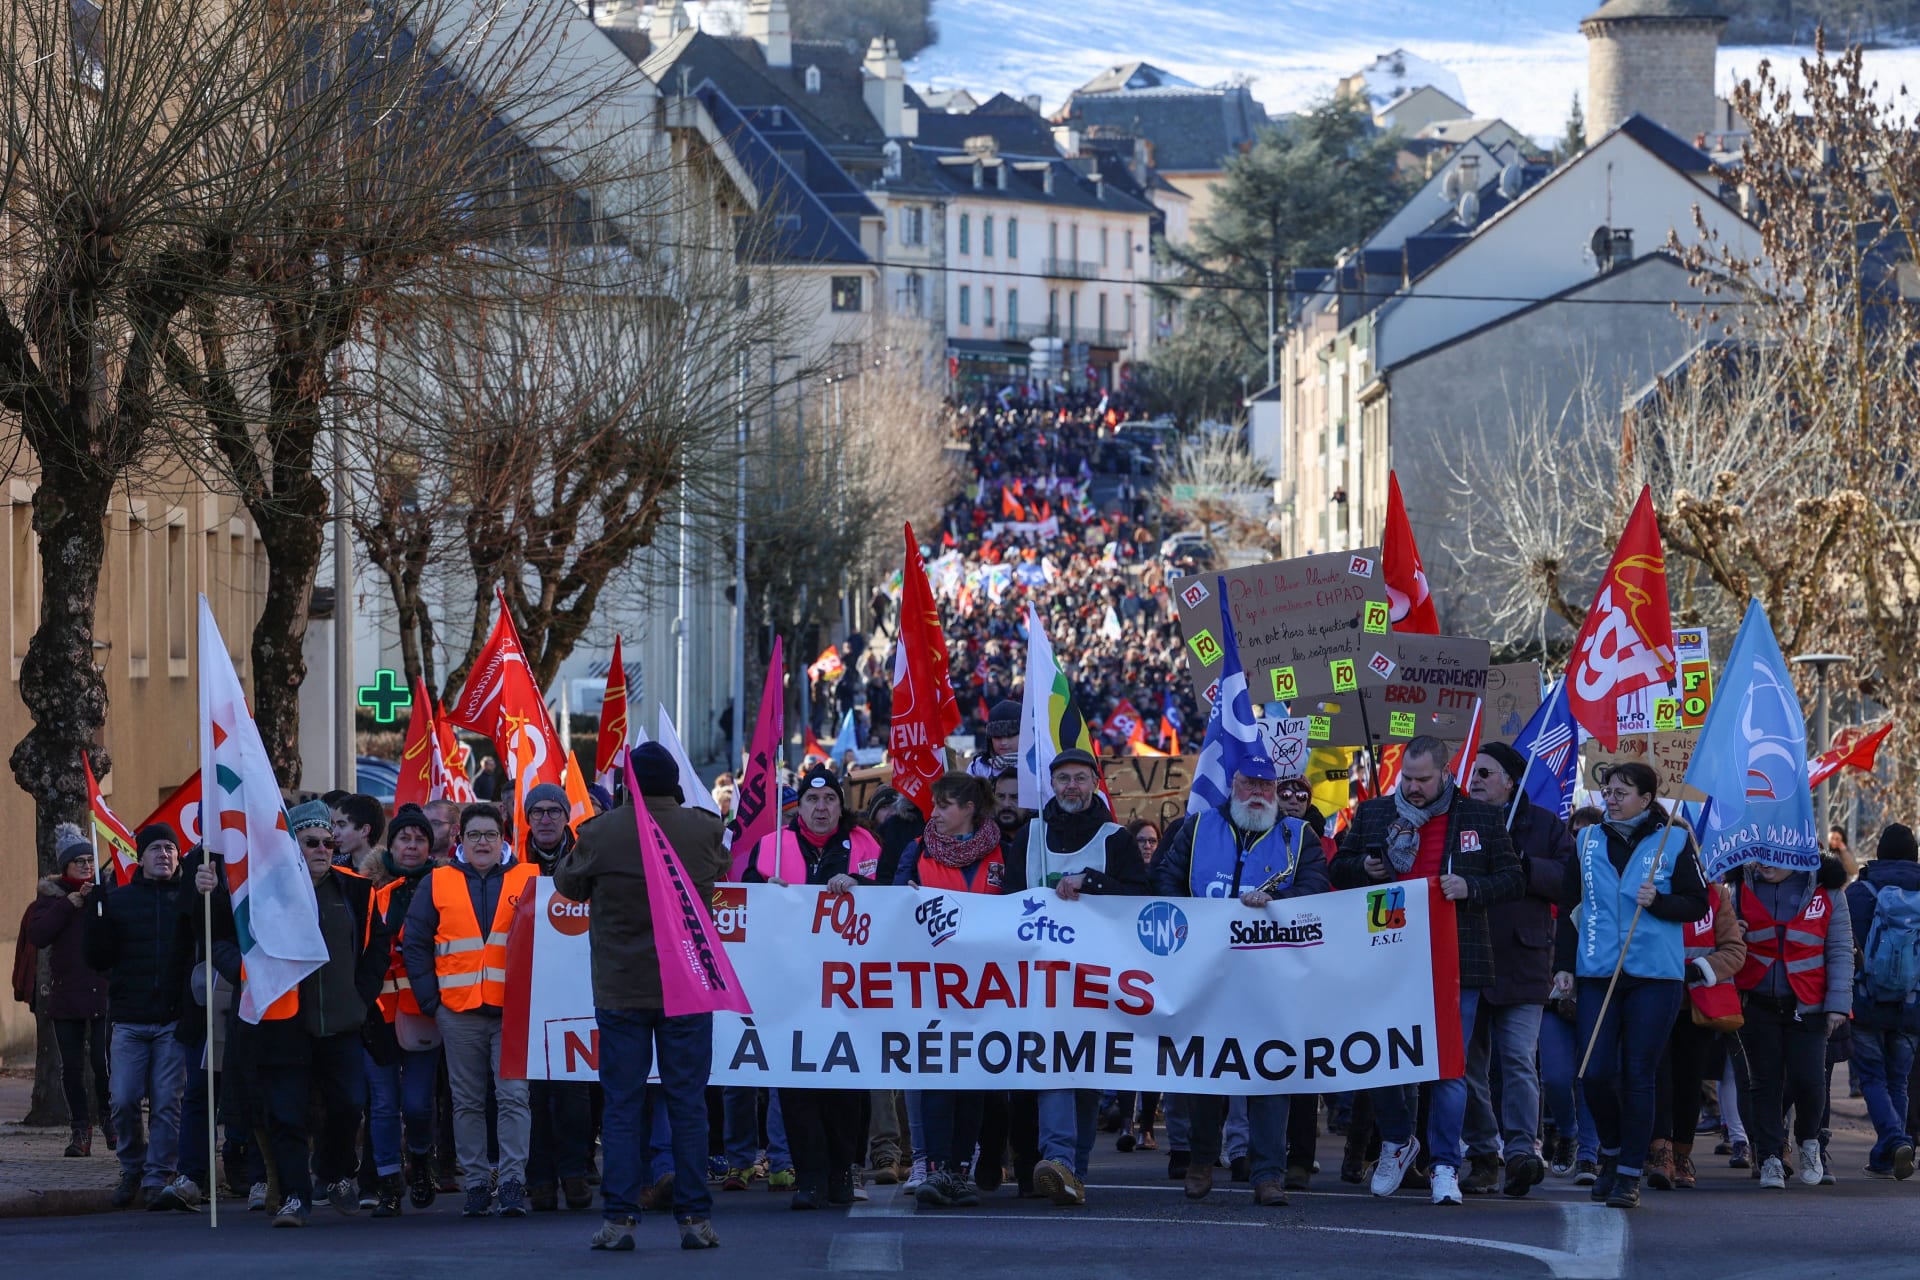  إضرابات واسعة تشل حركة النقل والمدارس في فرنسا احتجاجا على رفع سن التقاعد